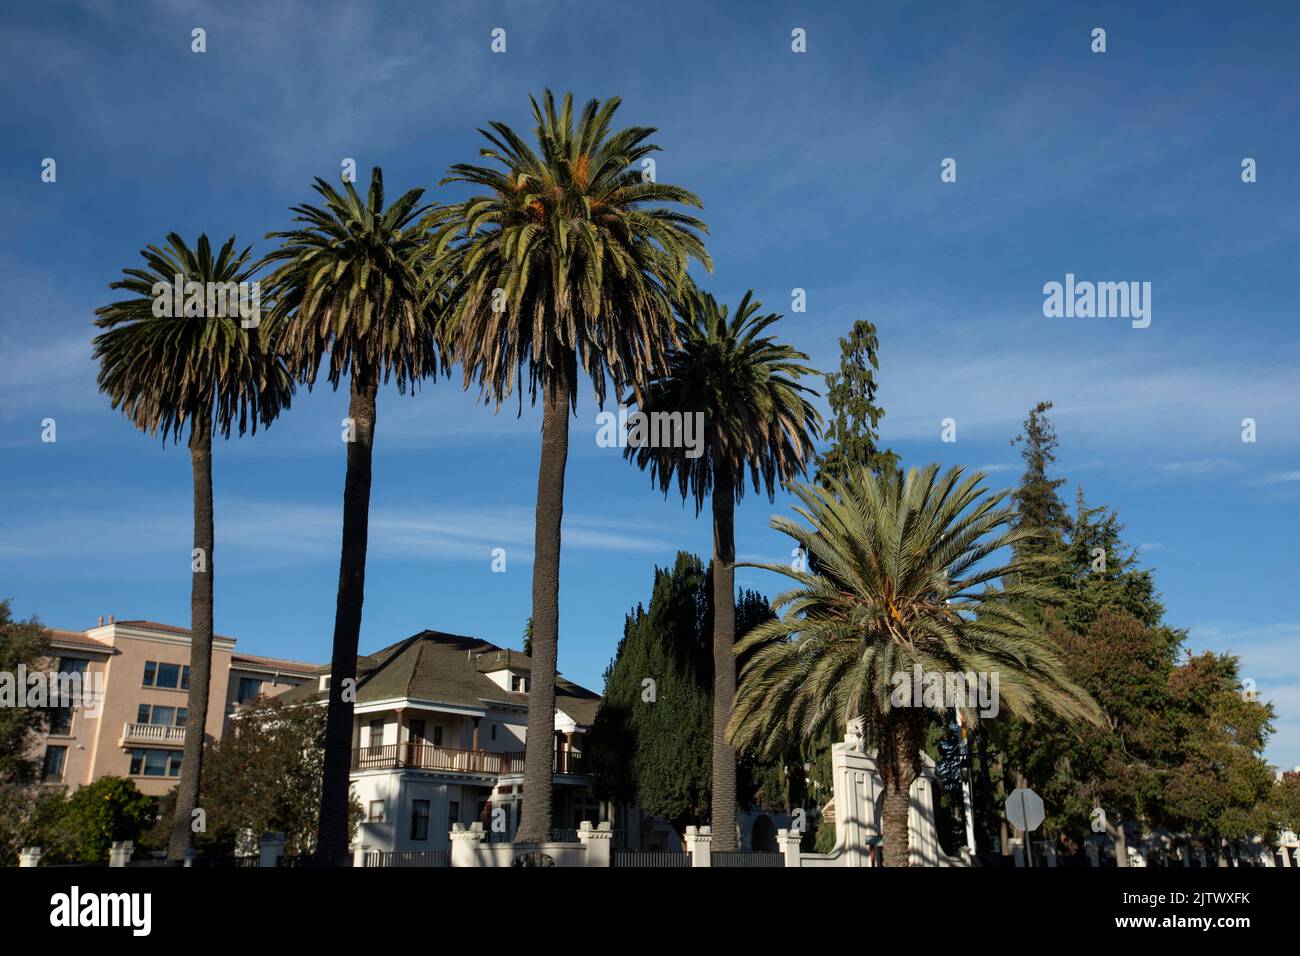 Nachmittagsansicht eines Wohnviertels in der Nähe der Innenstadt von San Leandro, Kalifornien, USA. Stockfoto